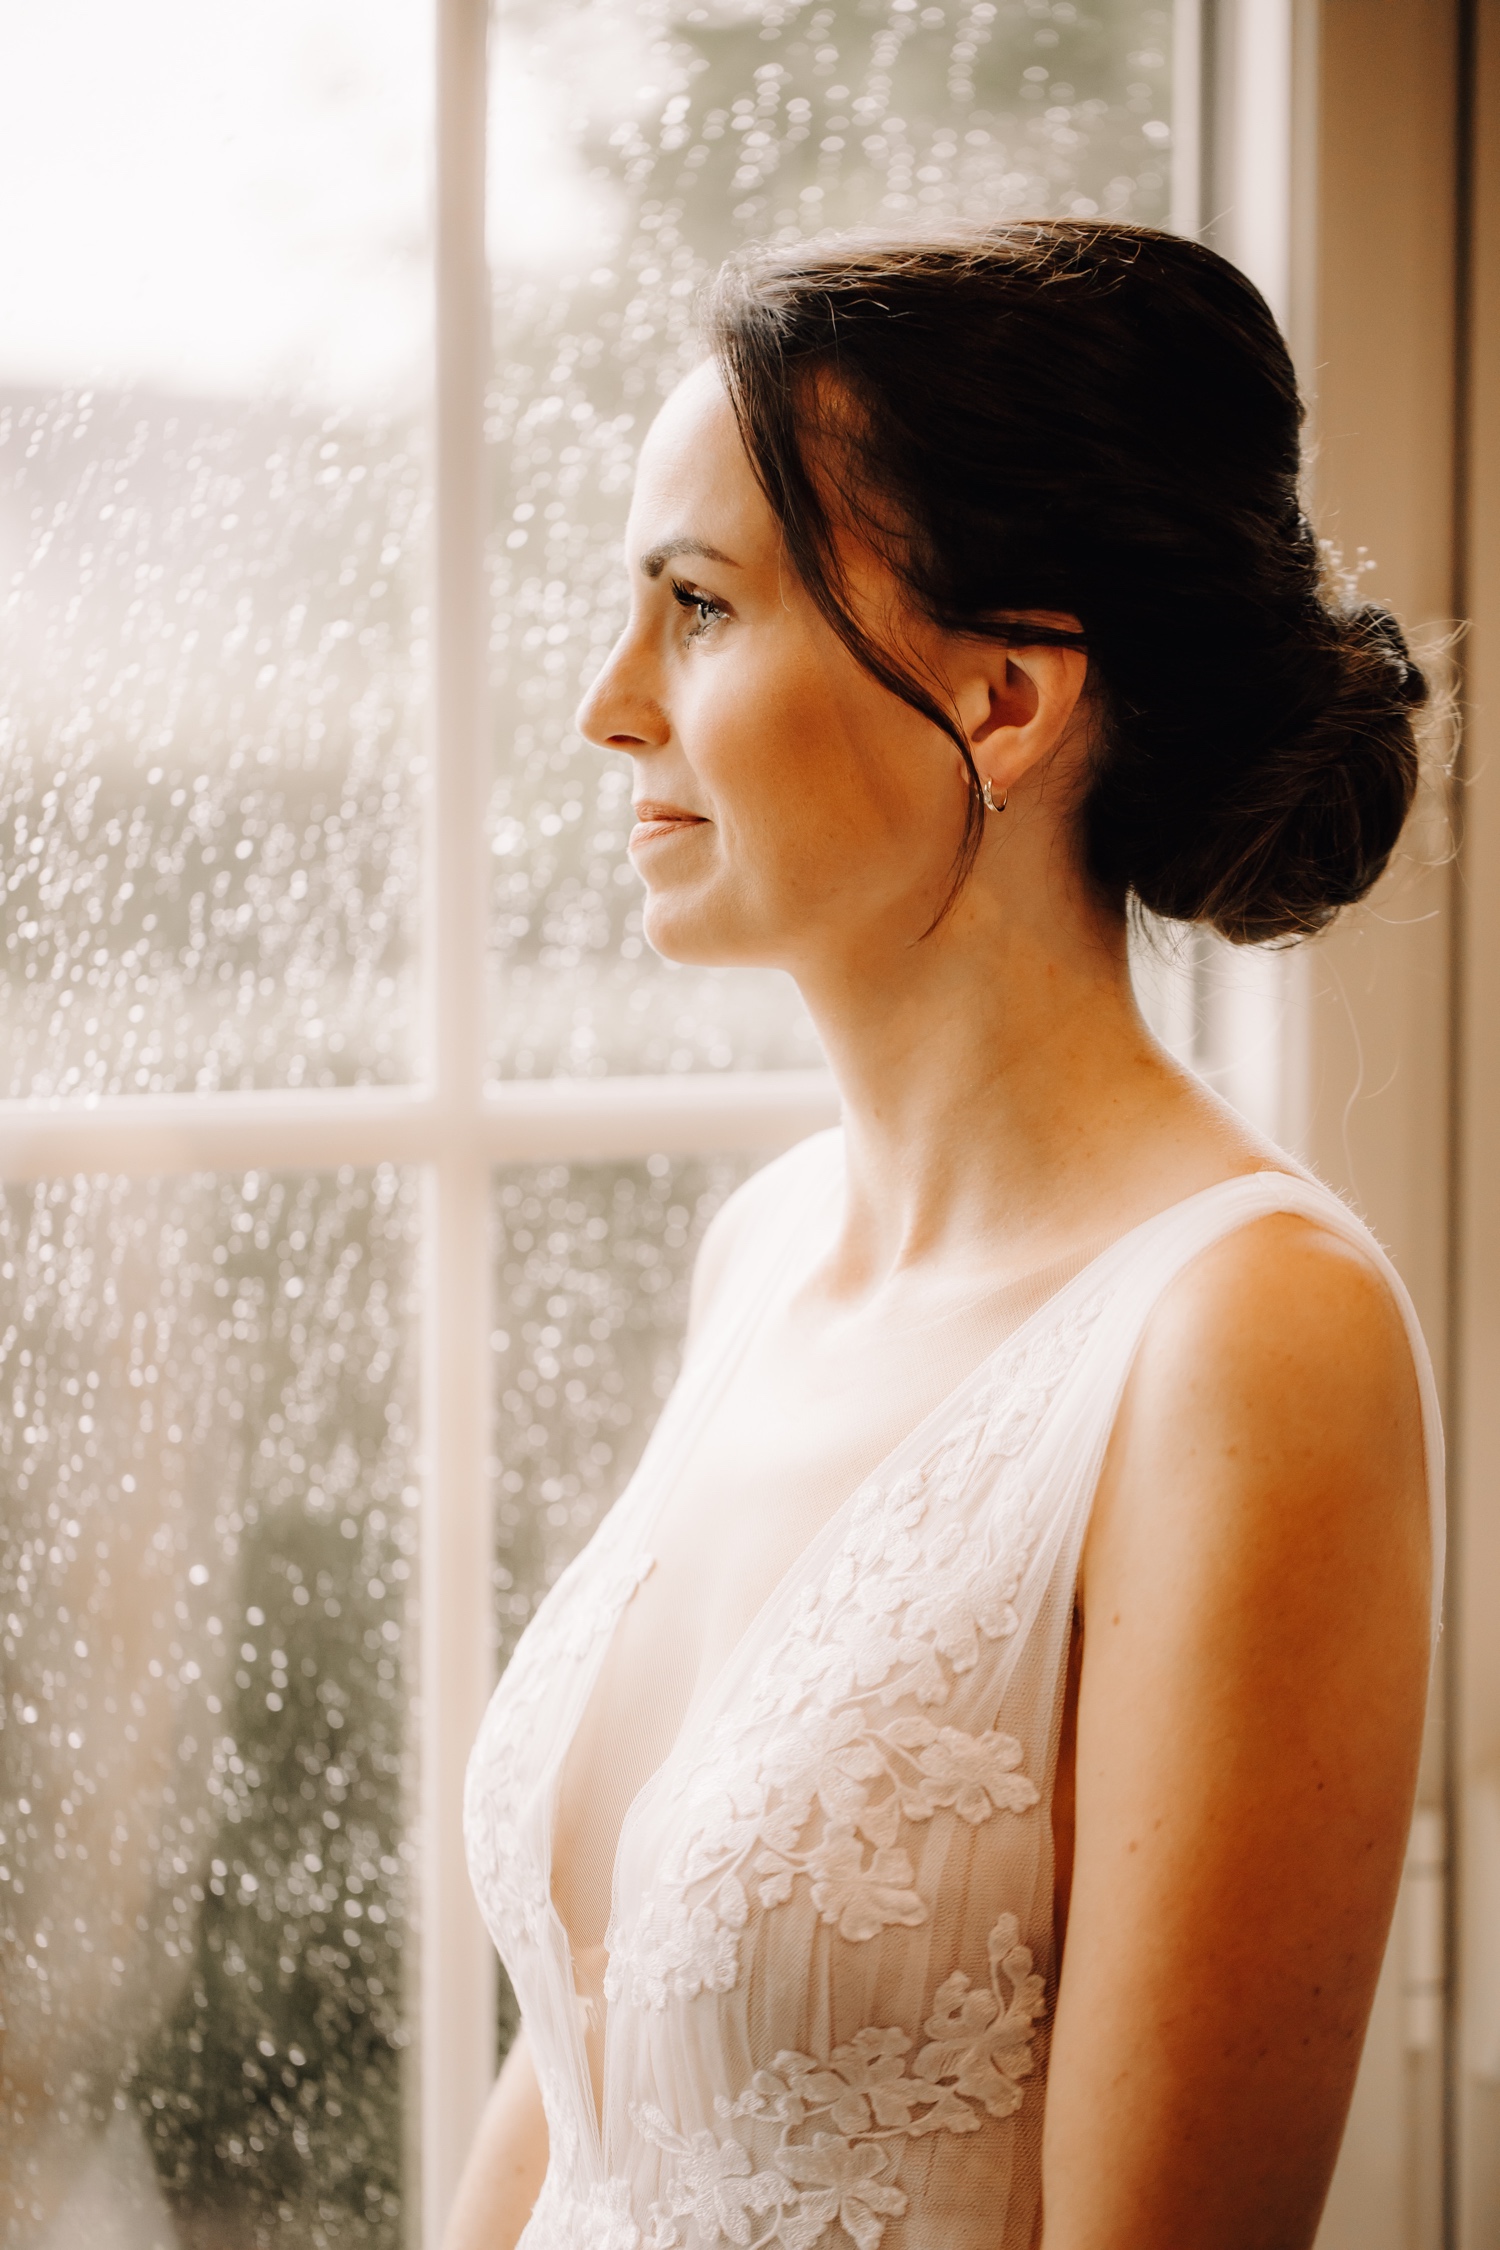 Huwelijksfotograaf Limburg - portret van de bruid aan het raam